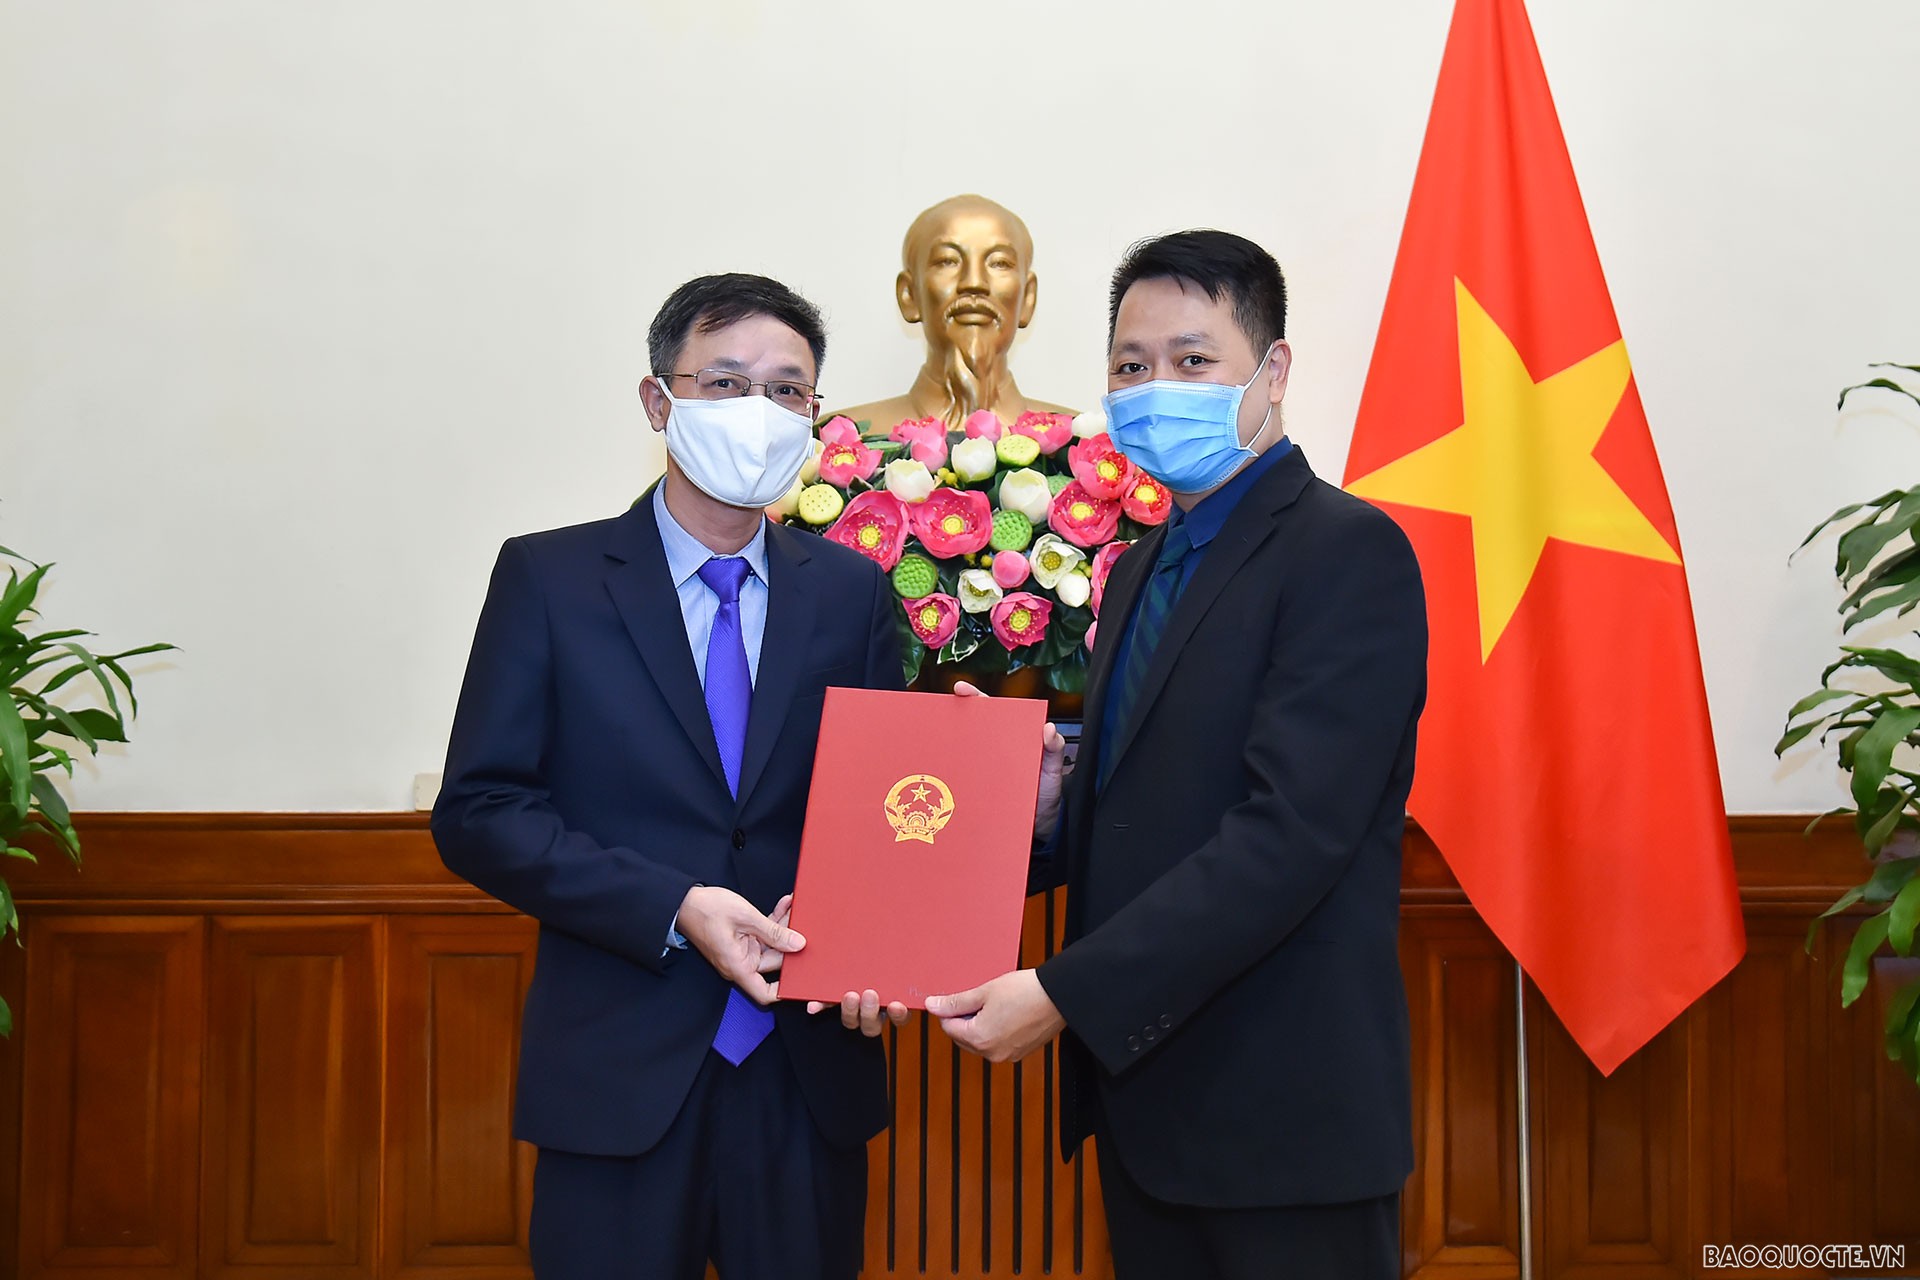 Cùng ngày, Phó Vụ trưởng phụ trách Vụ Tổ chức Cán bộ Nguyễn Việt Anh đã trao quyết định công nhận ông Phan Minh Chiến là Tập sự Phó Vụ trưởng Vụ Đông Nam Á - Nam Á - Nam Thái Bình Dương.